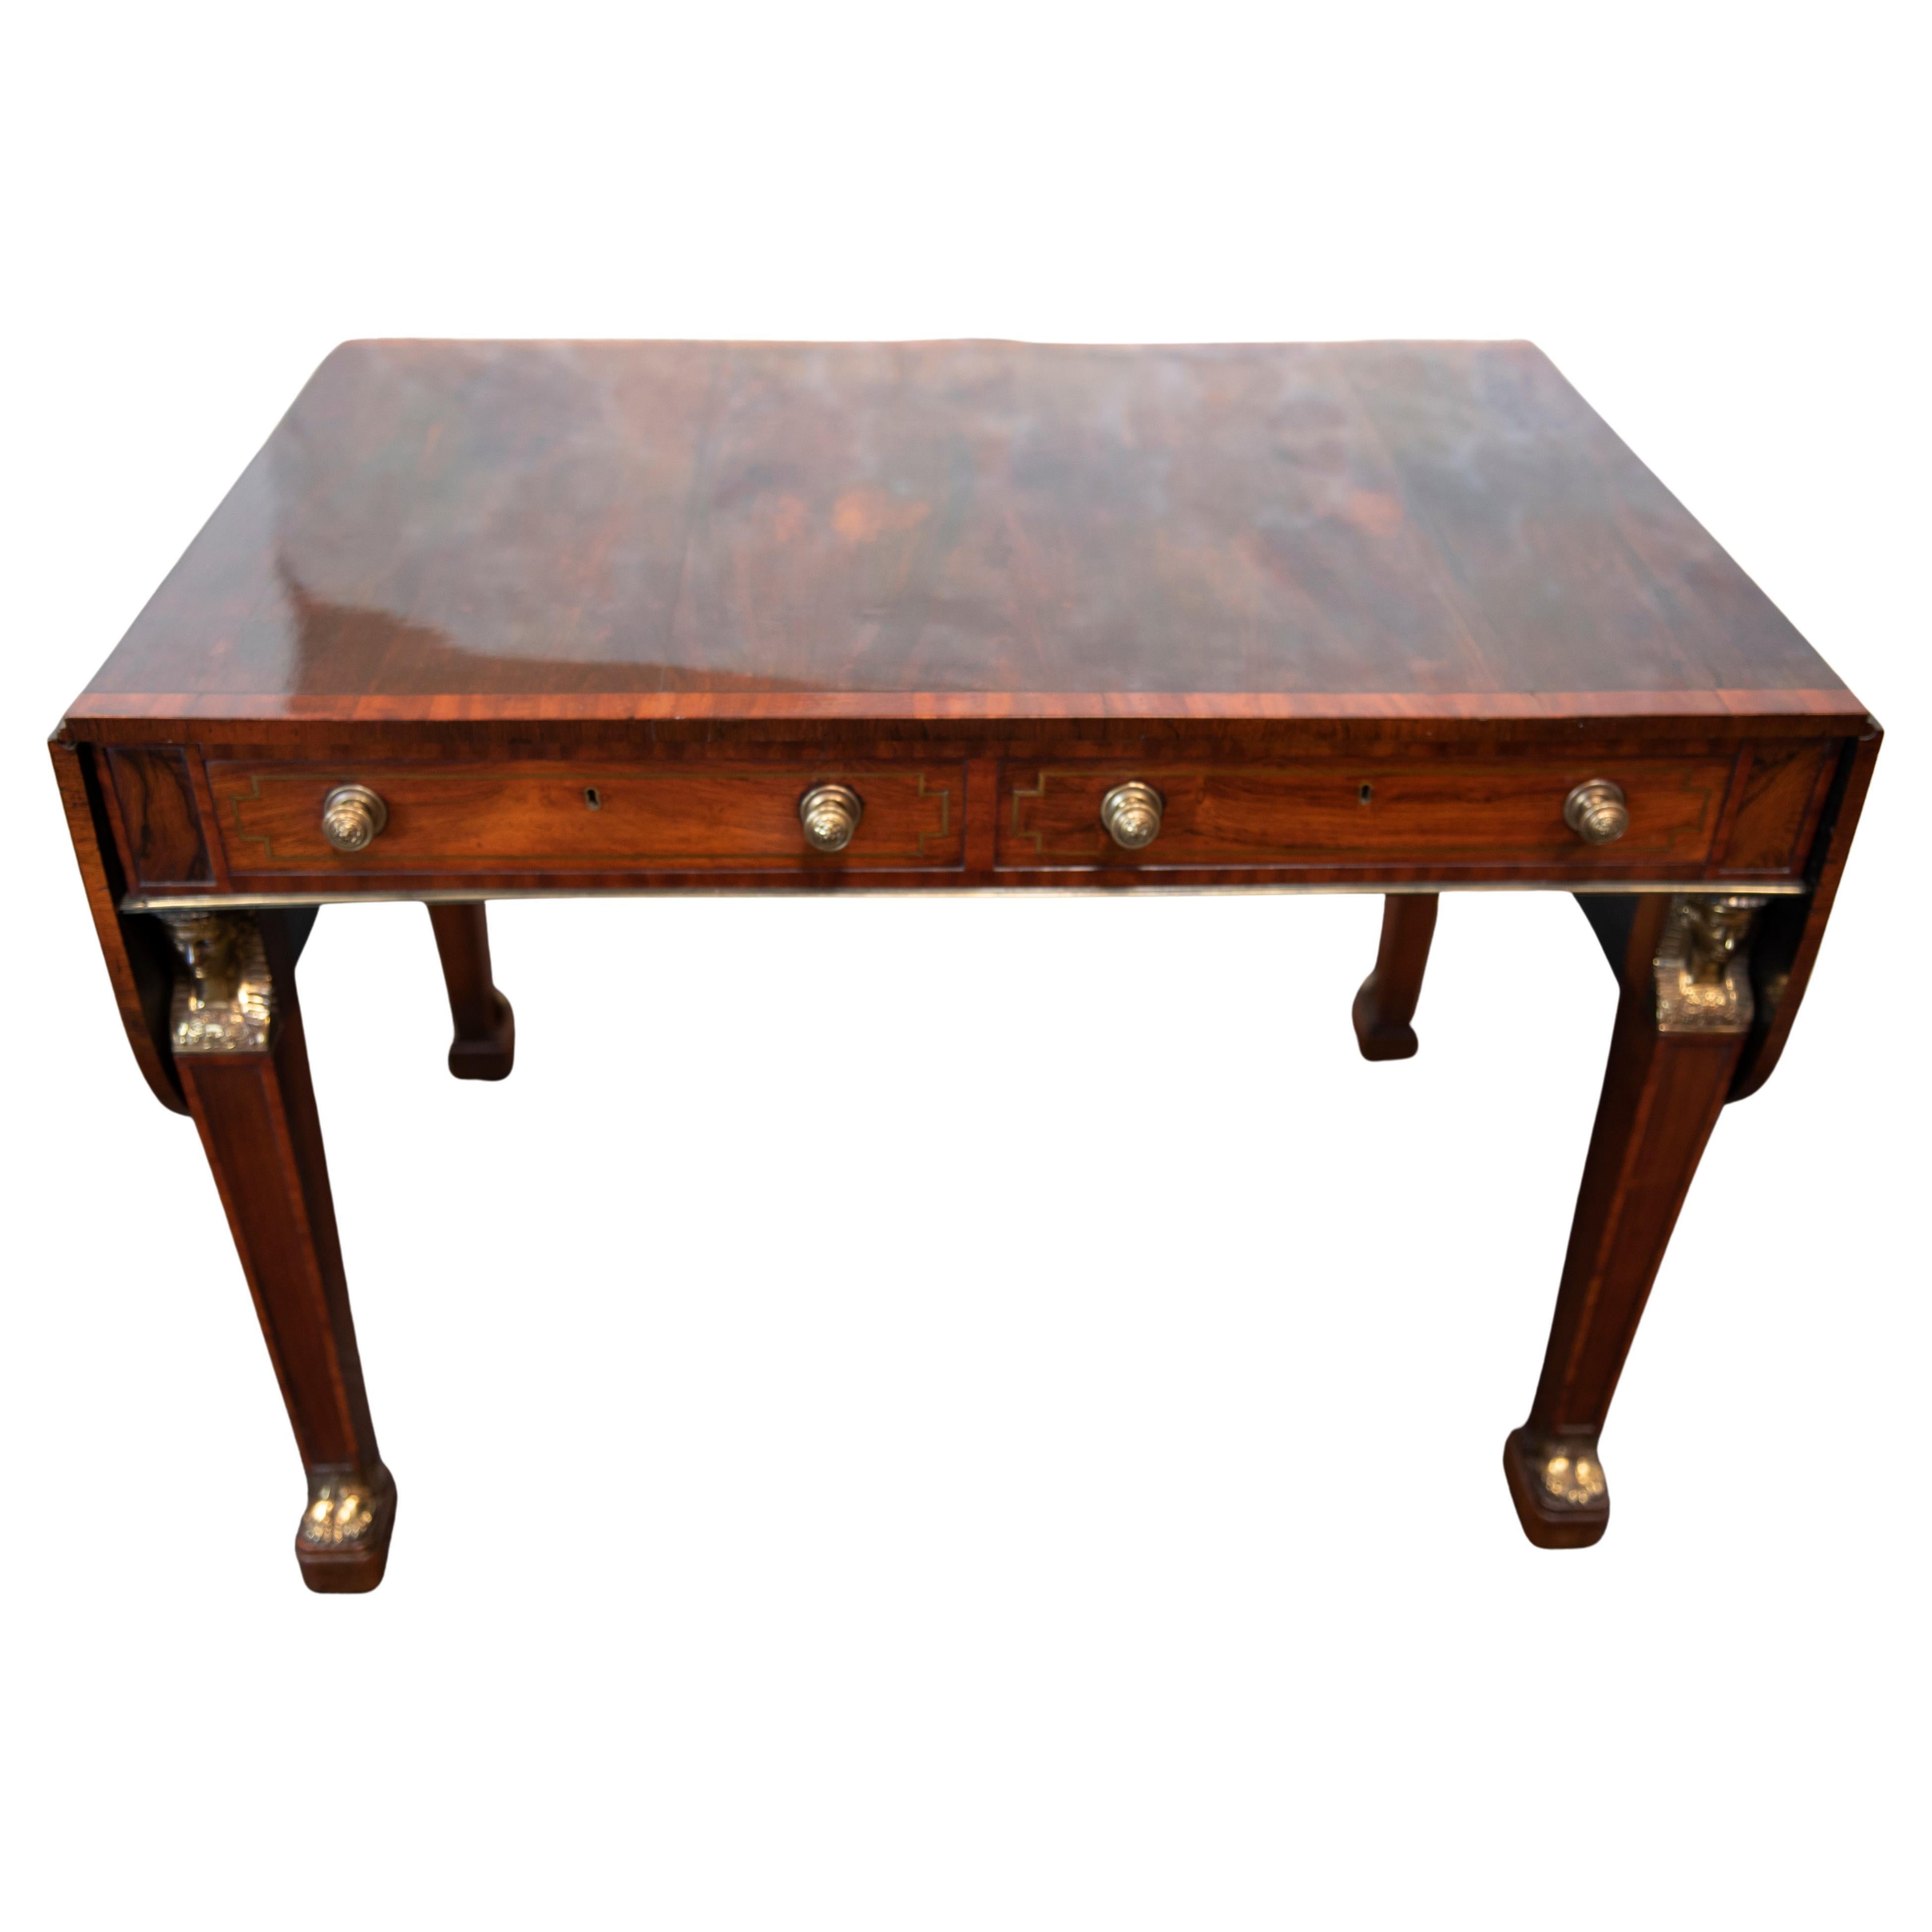 Table de canapé en acajou d'époque George III Regency, à la manière de Thomas Chippendale le Jeune. Le plateau rectangulaire arrondi à deux abattants est orné de bandes transversales en bois de satin et comporte deux tiroirs en frise garnis de cèdre